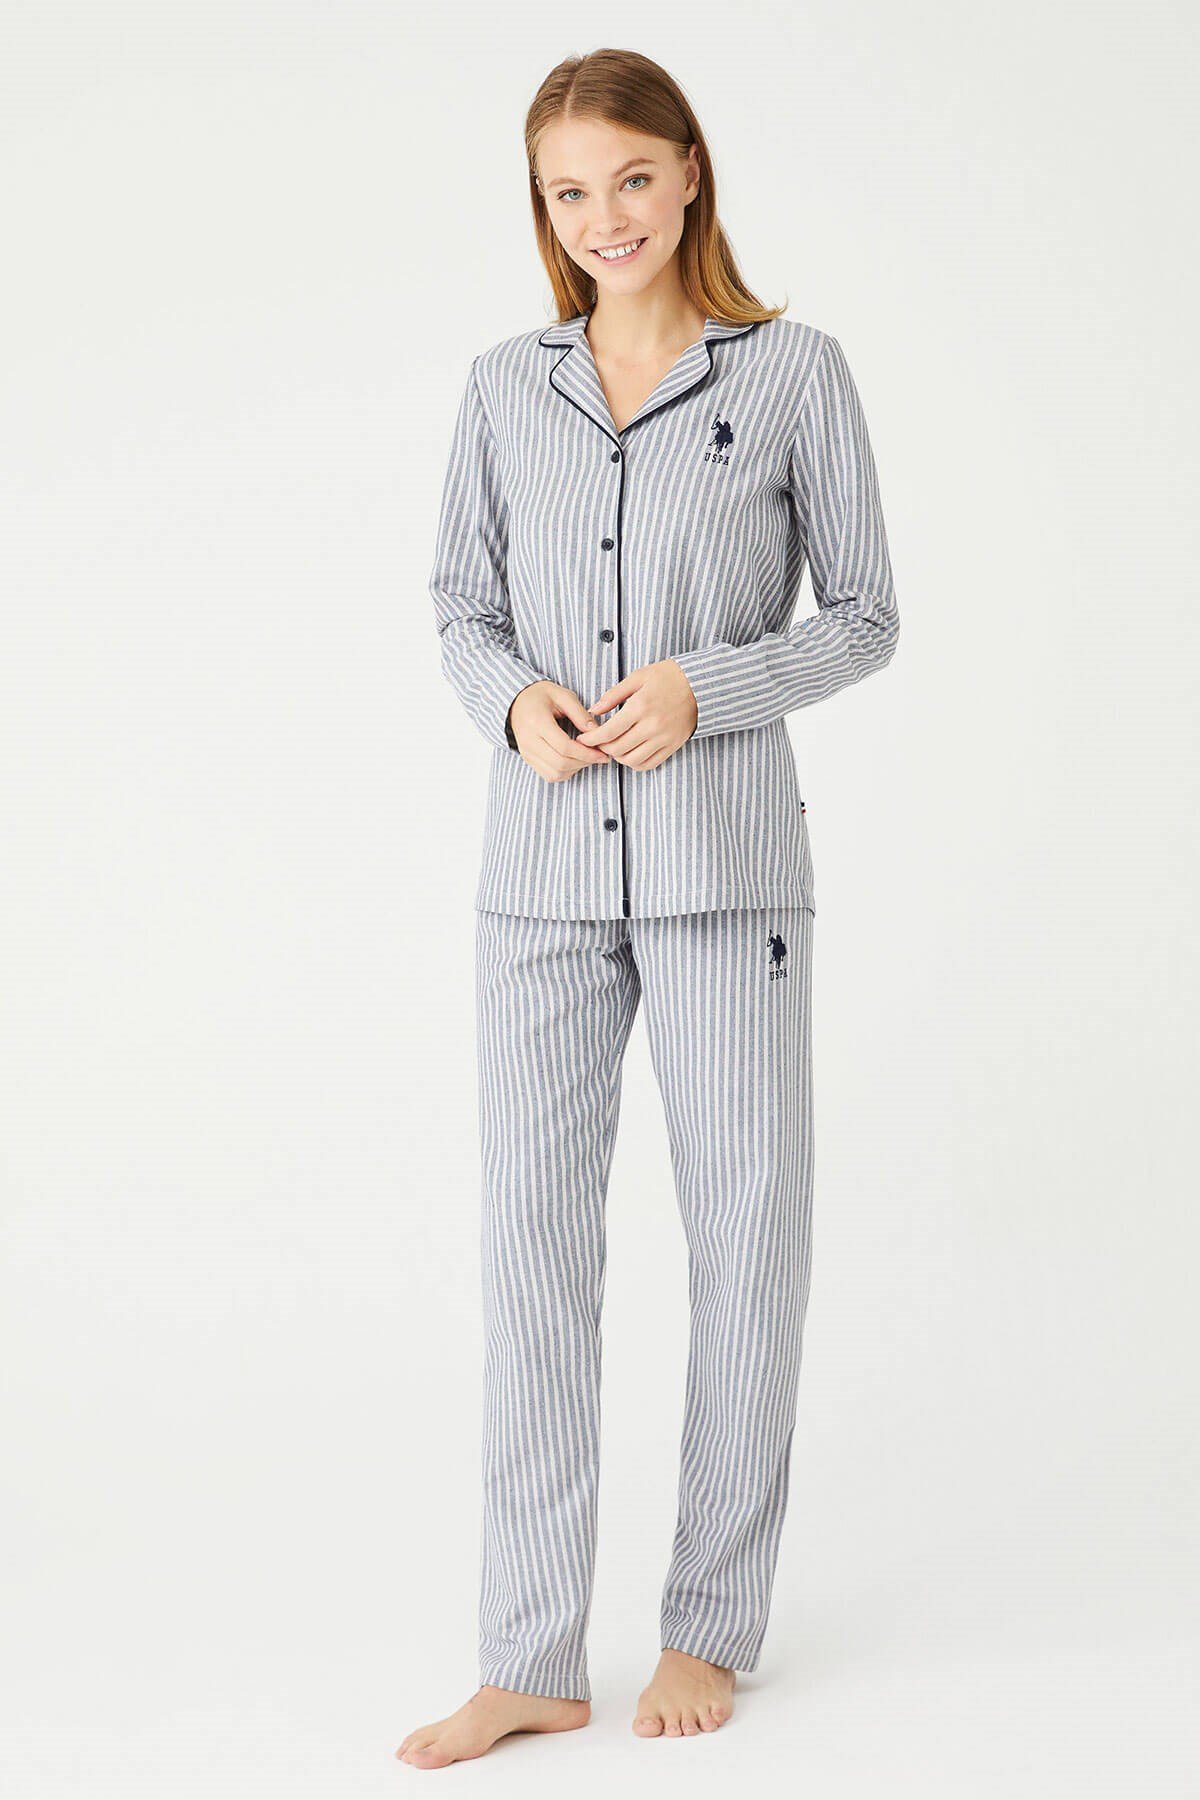 U.S. Polo Assn. Kadın Lacivert Boydan Patlı Pijama Takımı |  Modcollection.com.tr